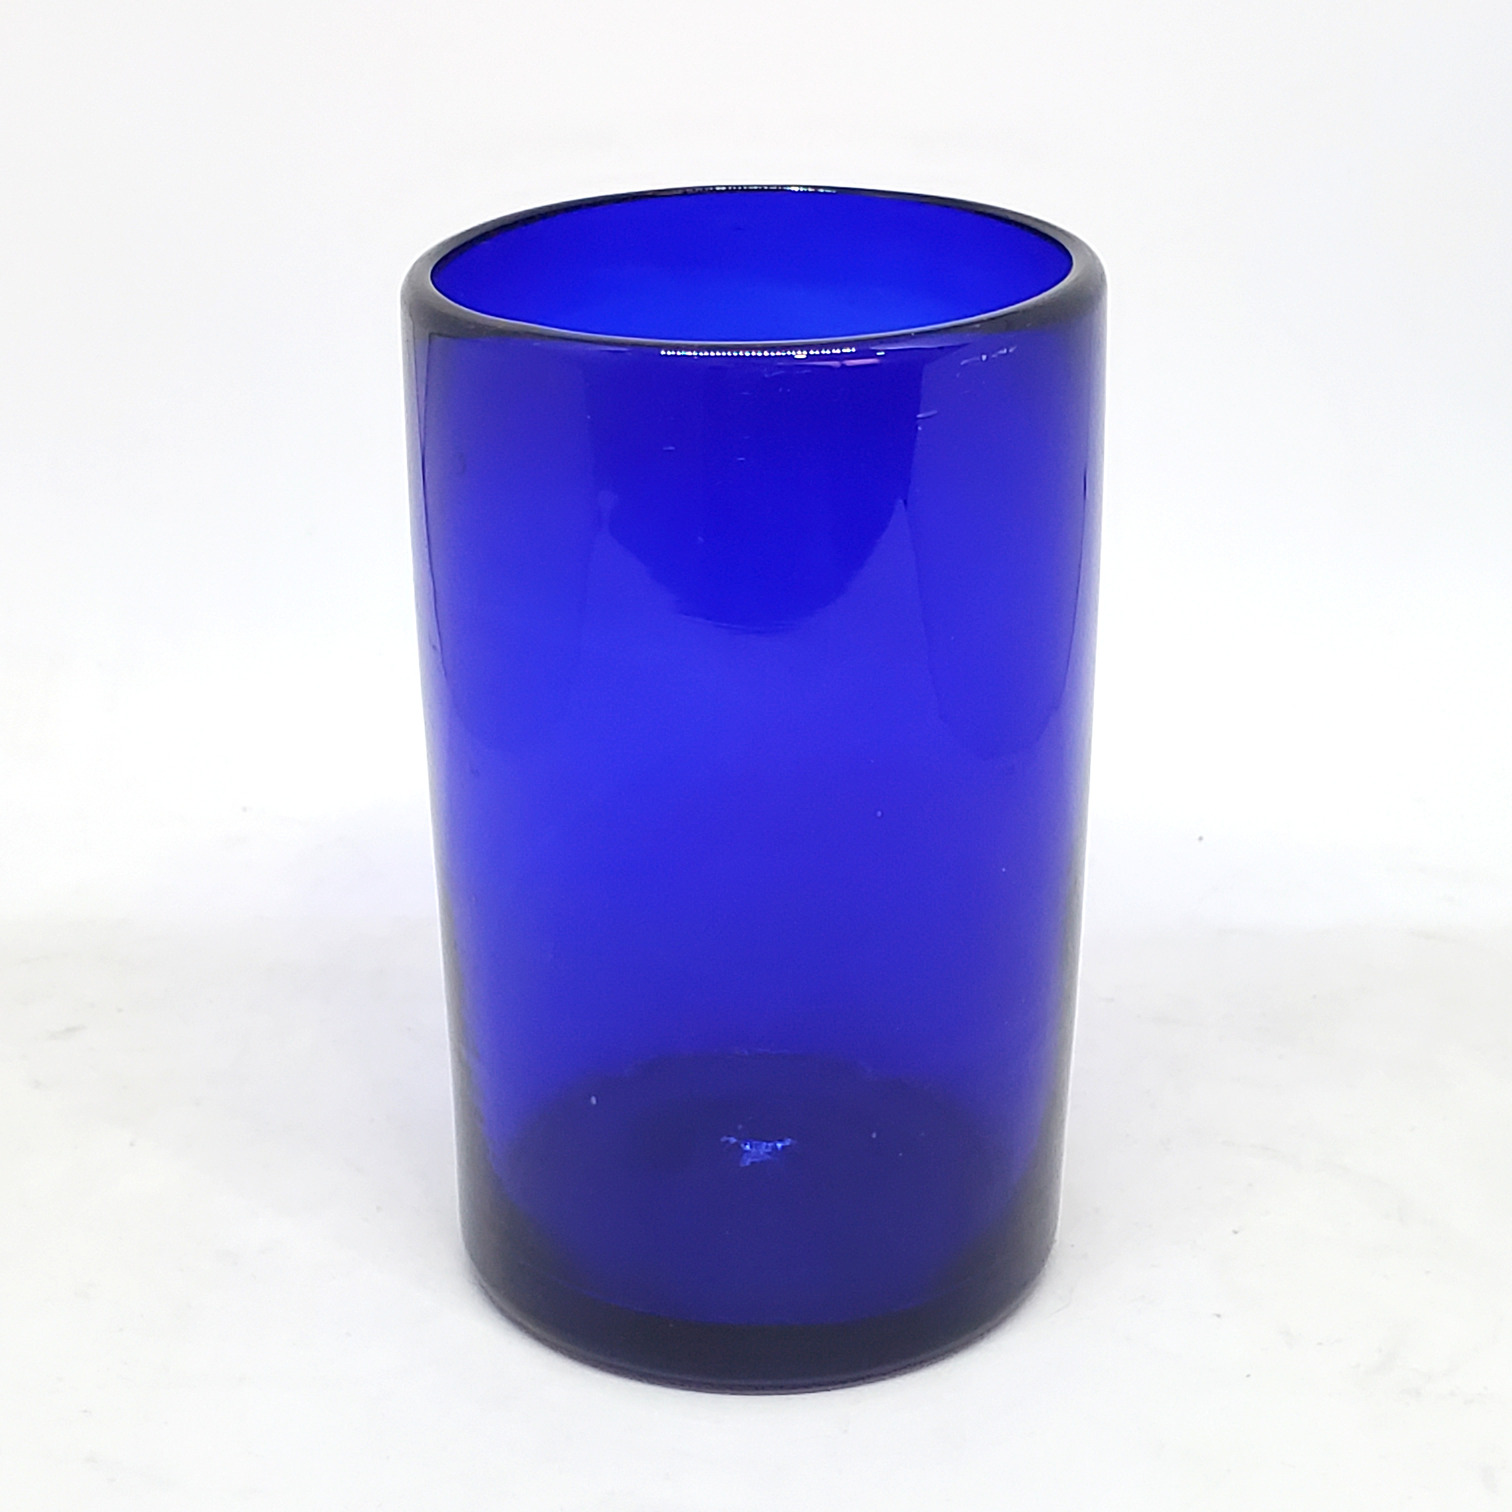 Colores Solidos / Juego de 6 vasos grandes color azul cobalto / Éstos artesanales vasos le darán un toque clásico a su bebida favorita.